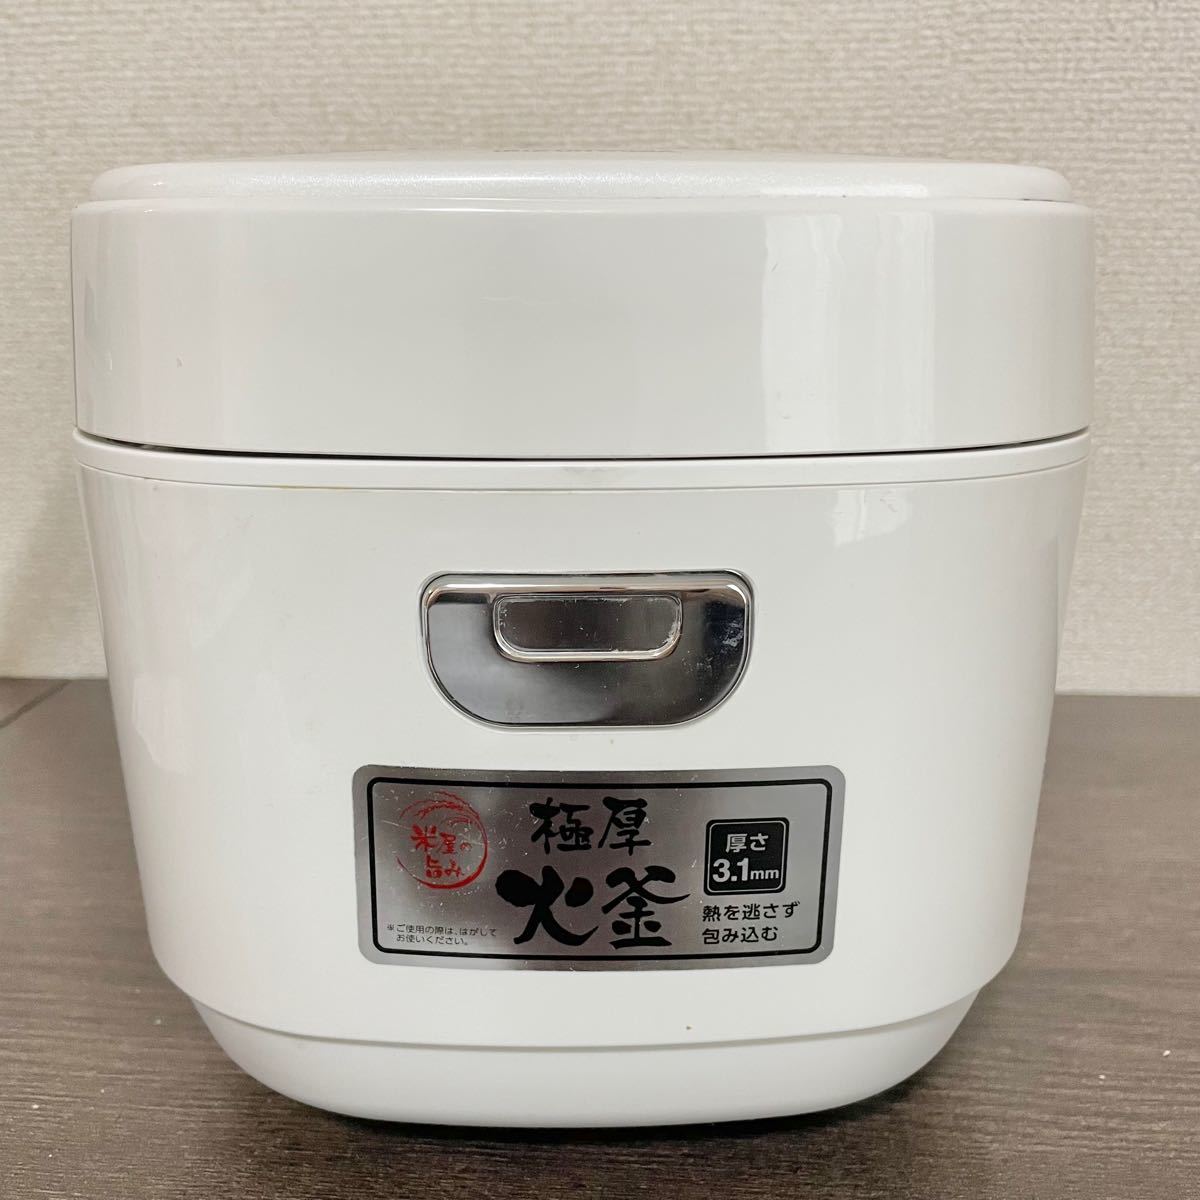 アイリスオーヤマ ジャー炊飯器 3合 ERC-MA30